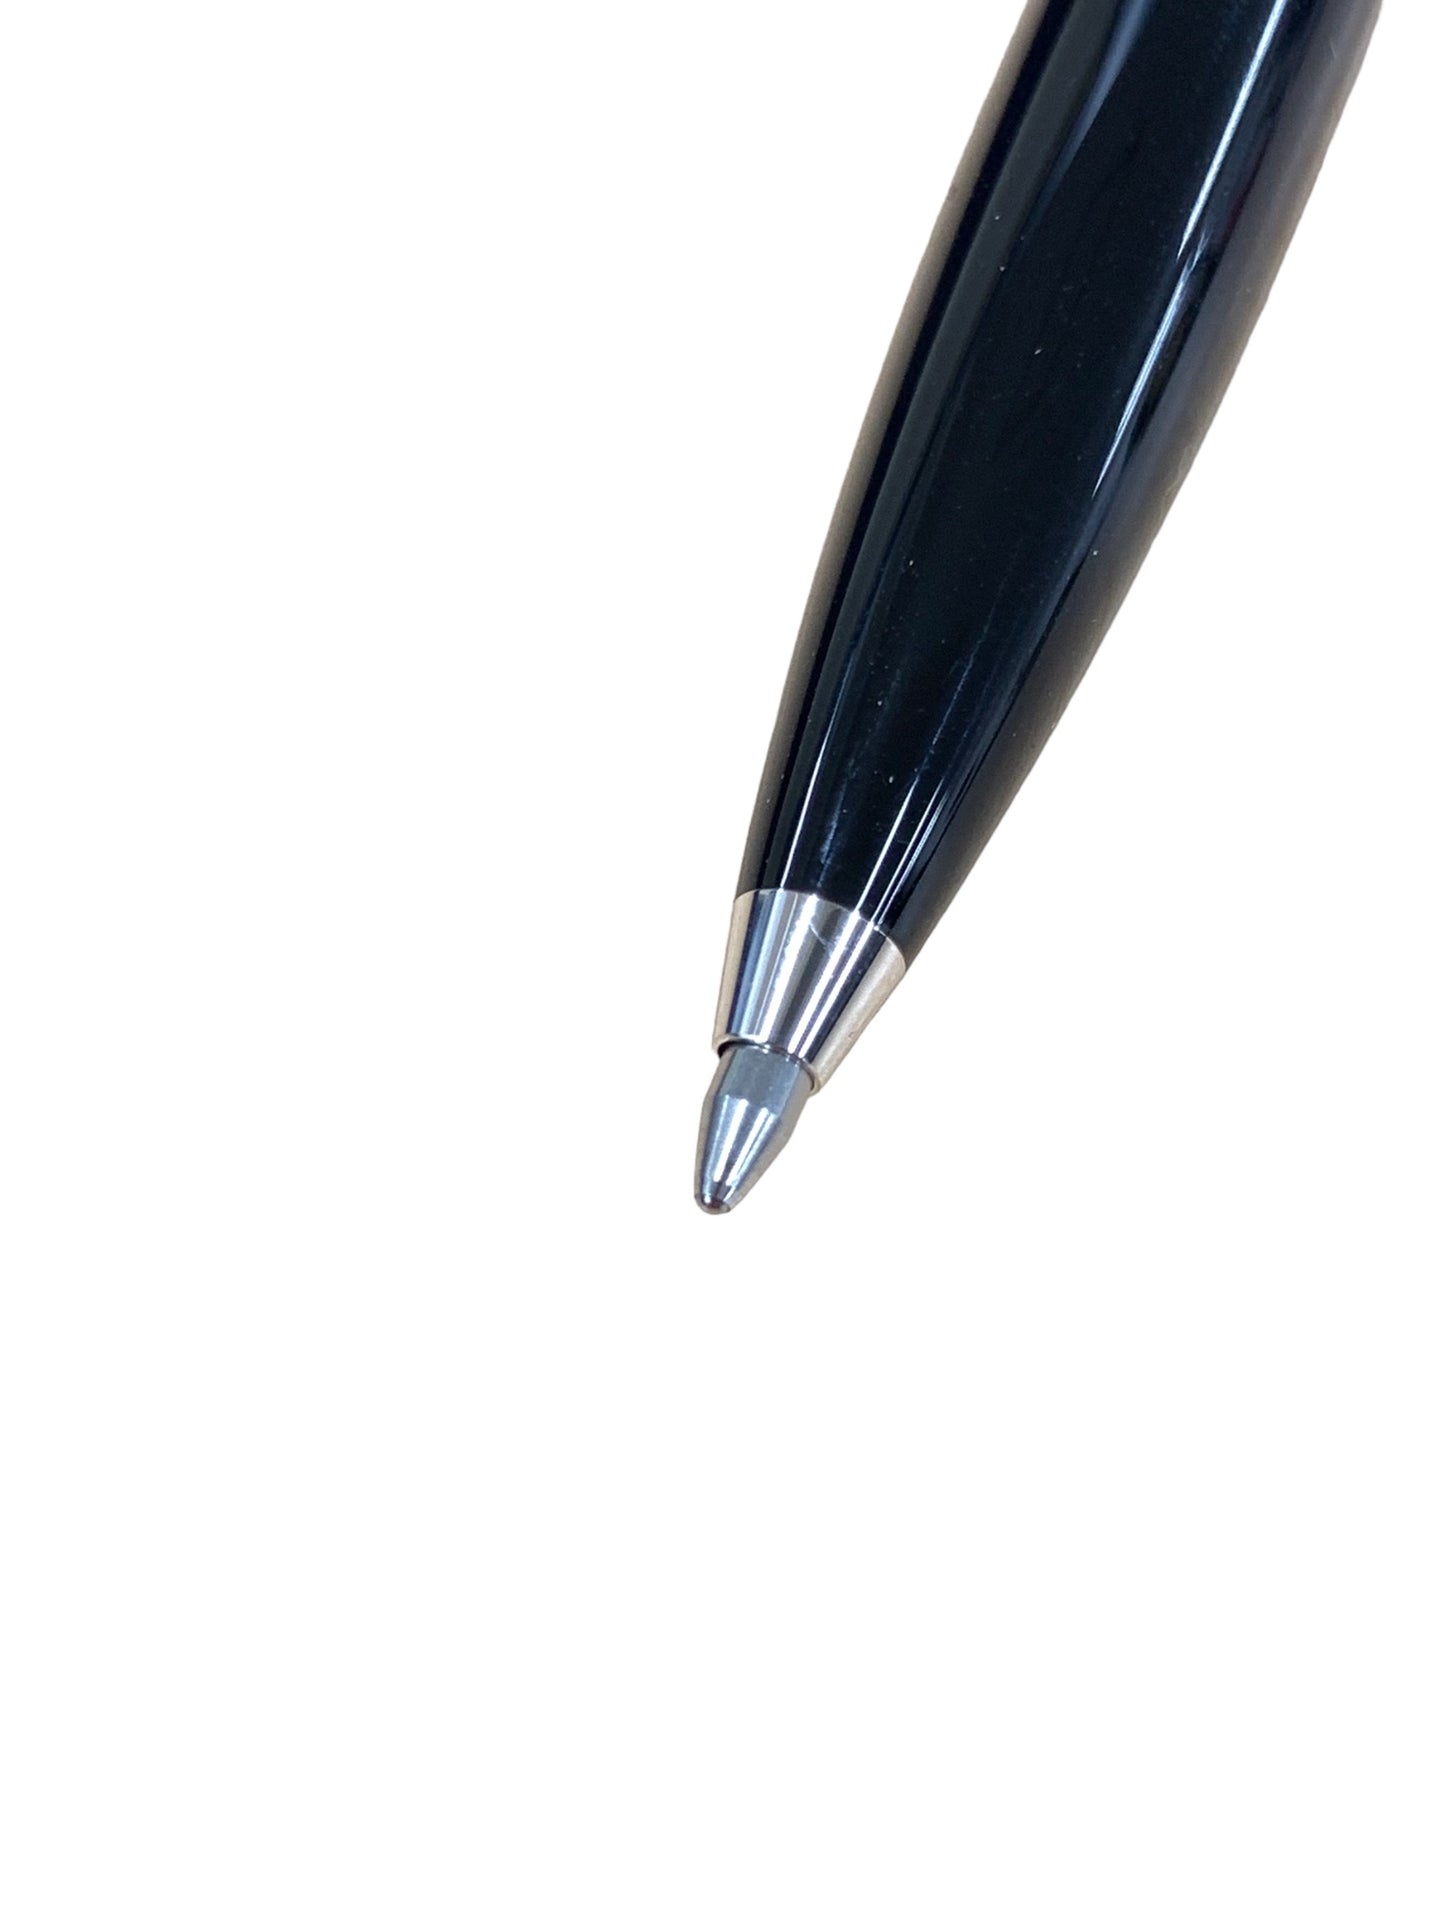 ペリカン スーベレーン K405 ボールペン ブルー ストライプ 縦縞 ノック式 IT14M7Q9913F